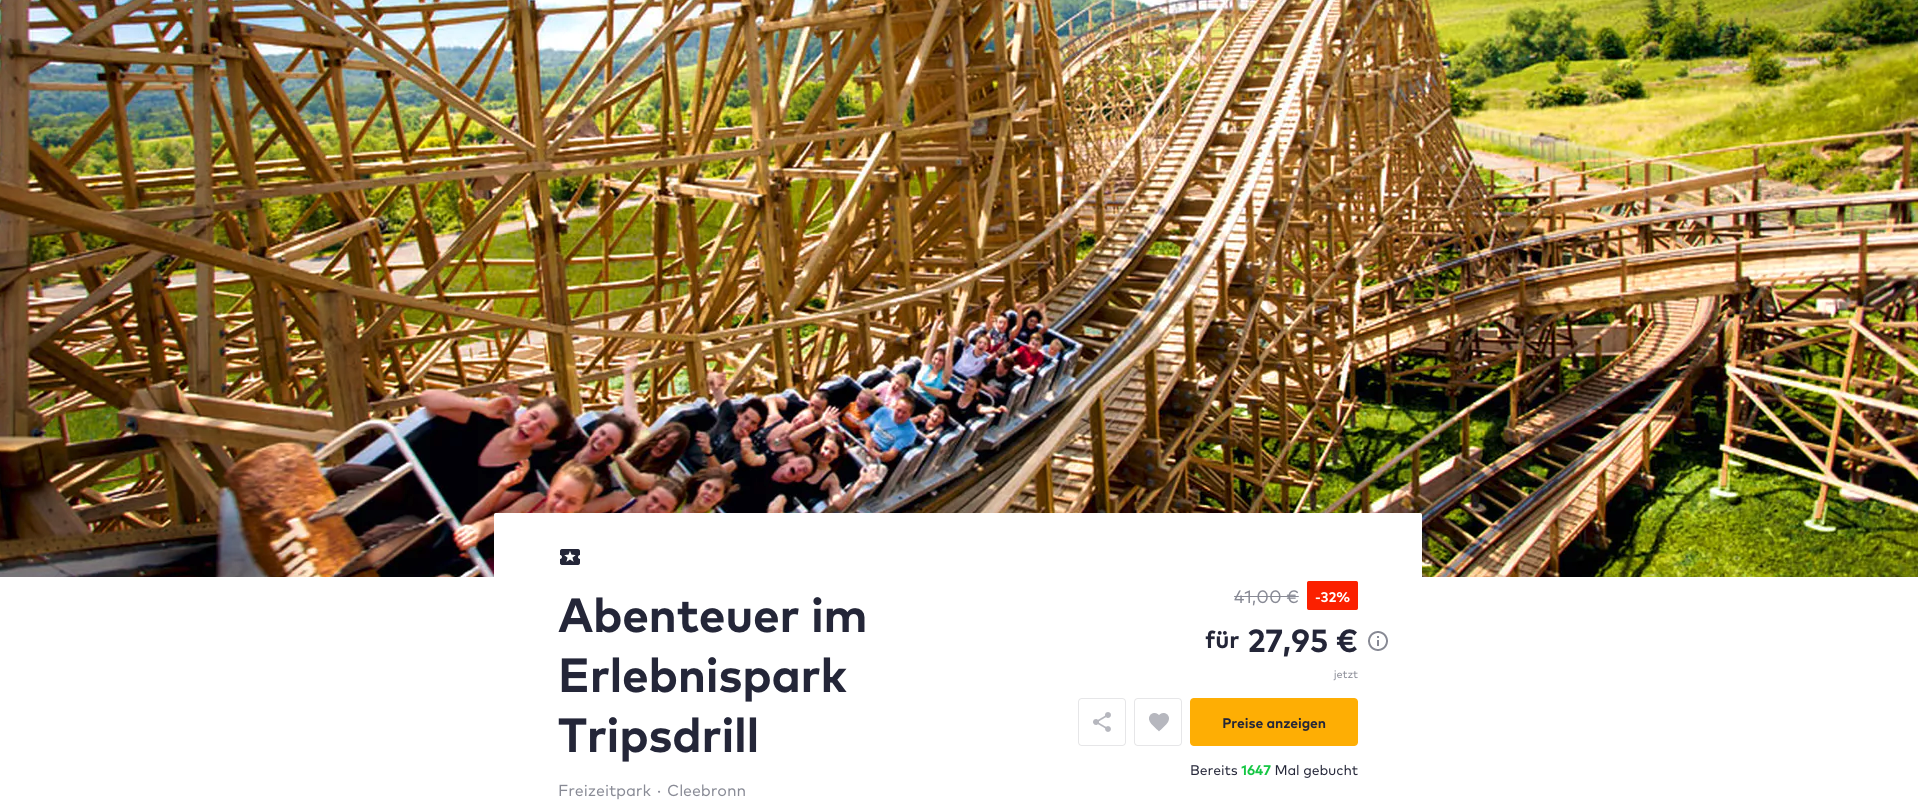 Tageskarte für den Erlebnispark Tripsdrill inkl. Wildparadies, Mittagessen und Softdrink nur 26,80€